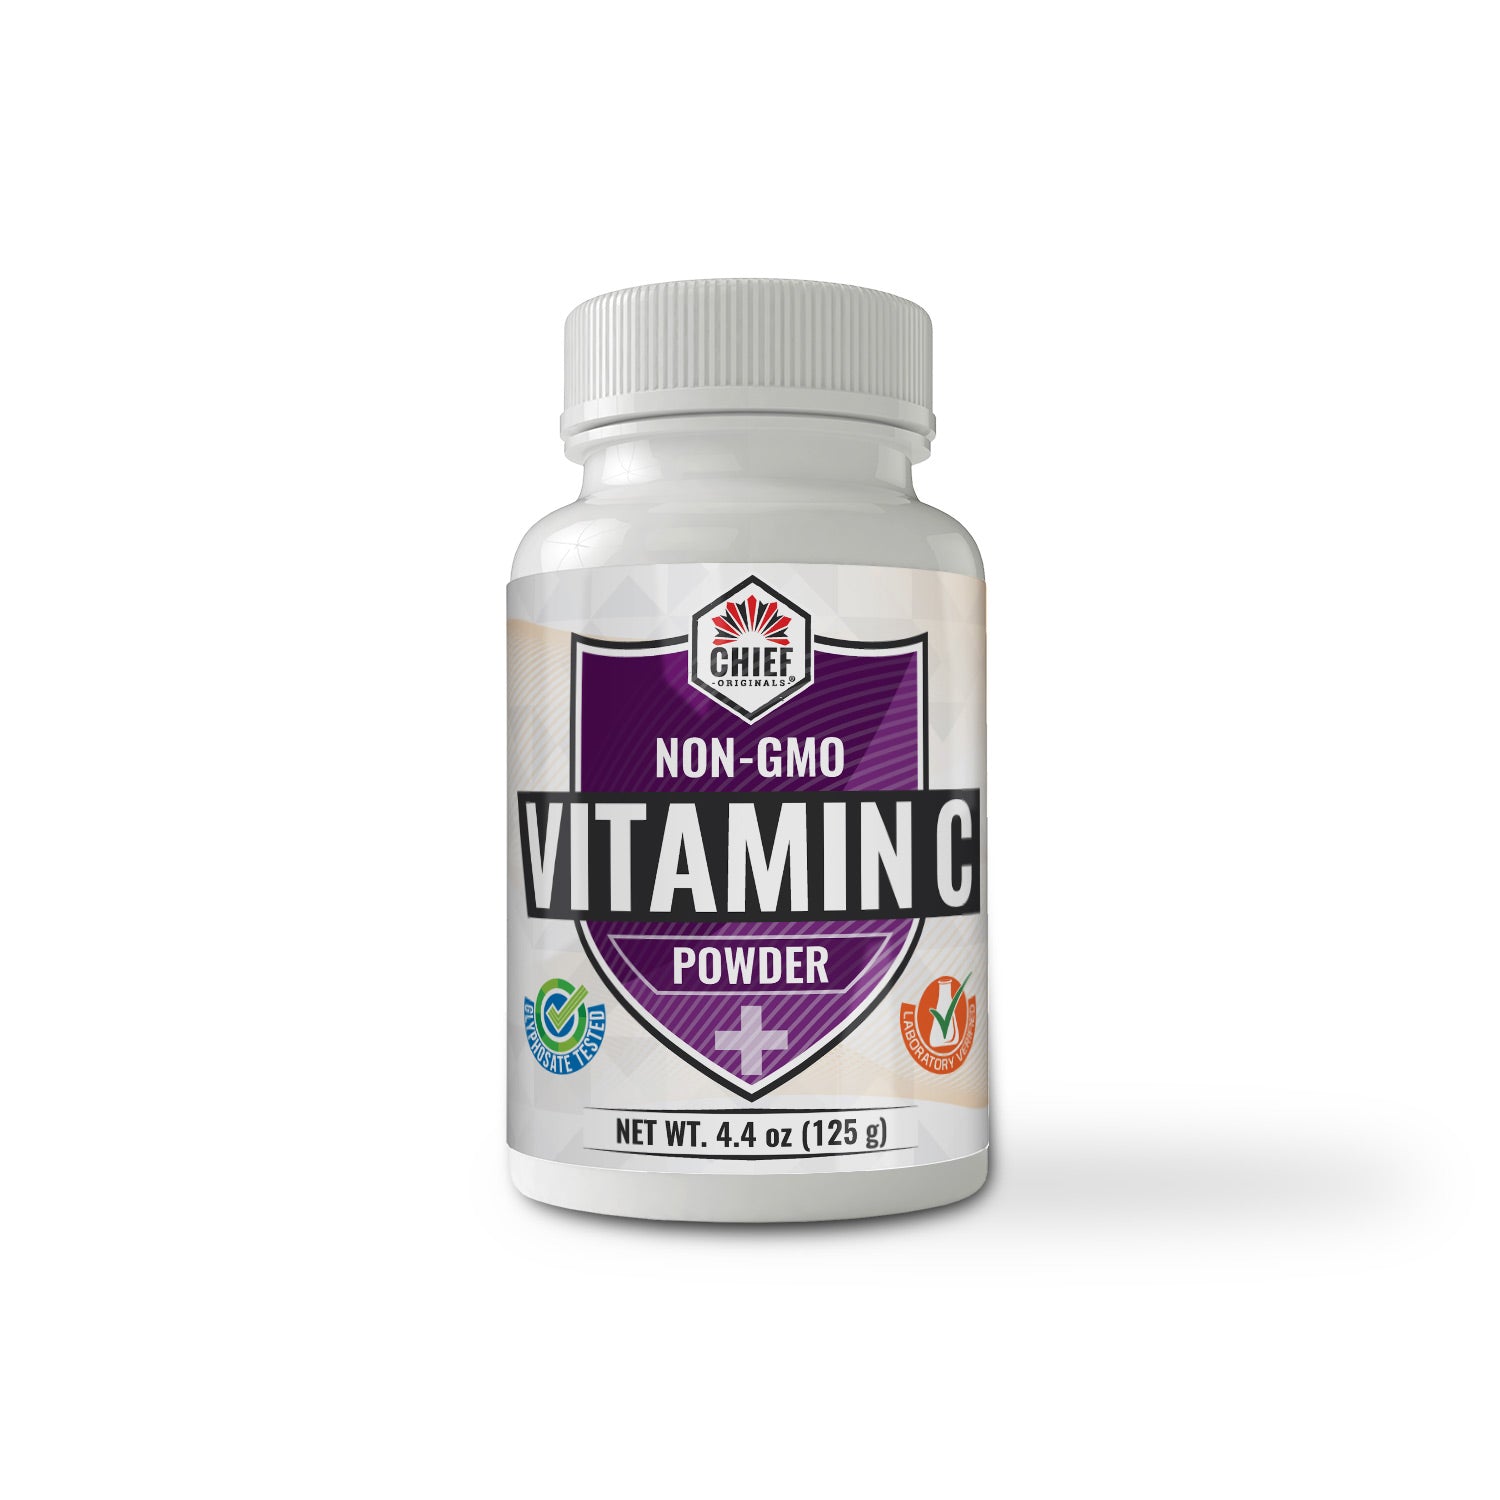 Non-GMO Vitamin C Powder 4.4oz (125g) (6-Pack)